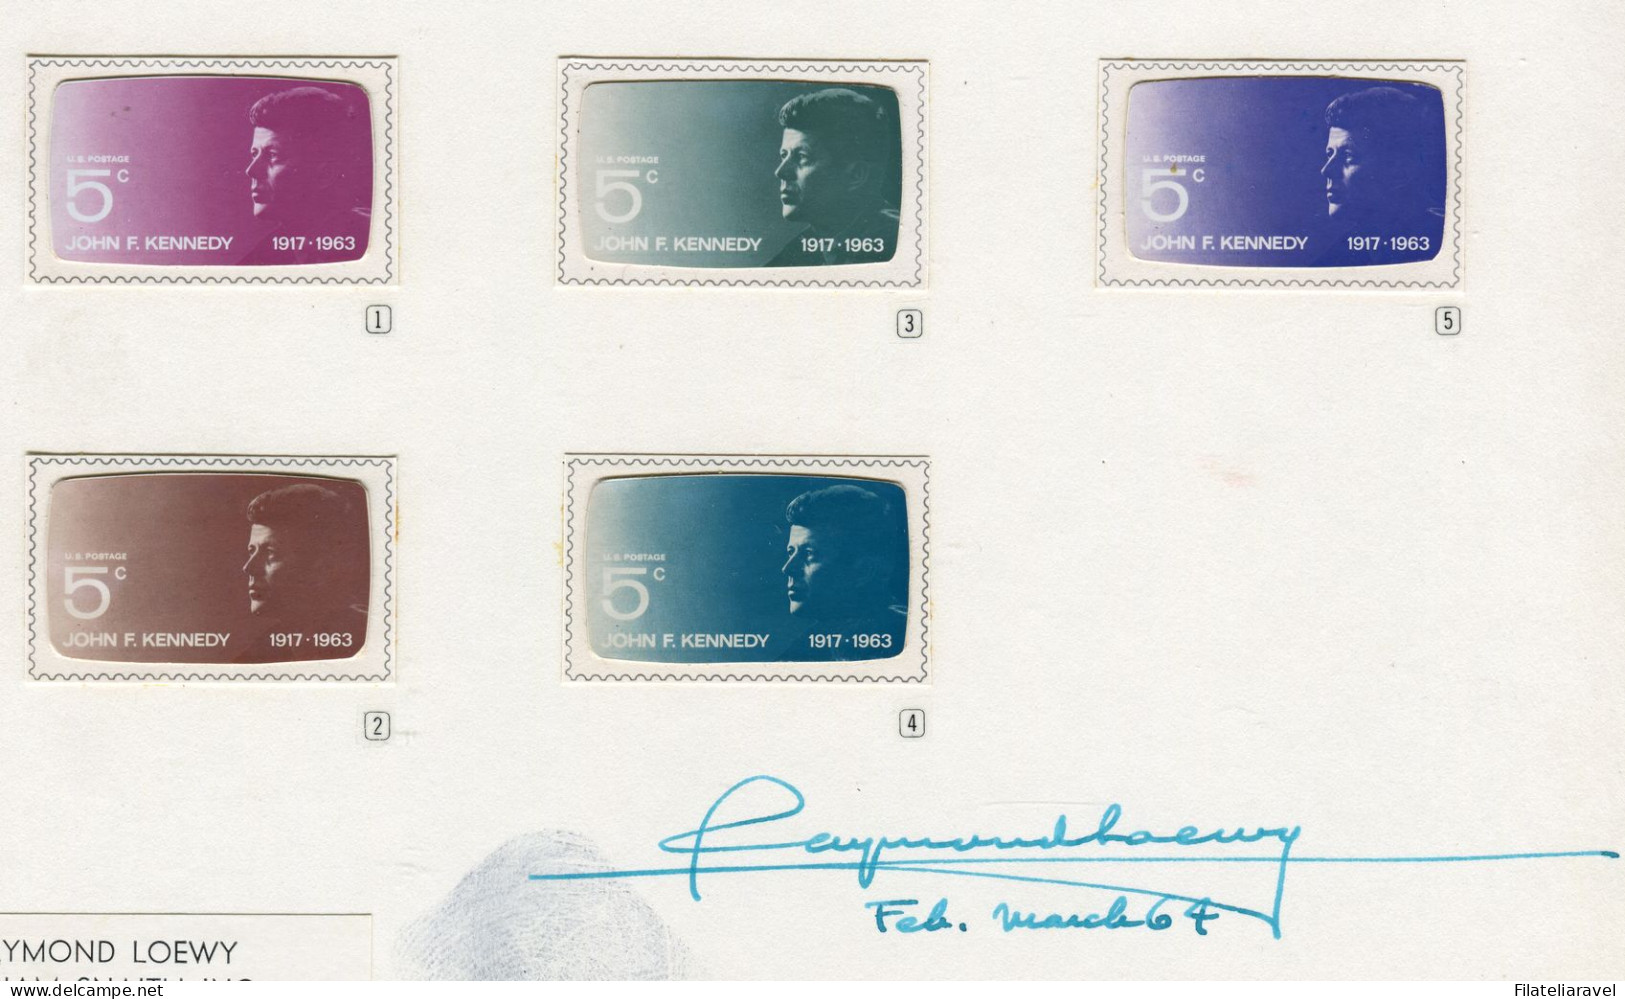 1964 USA - Bozzetti di prova 4/19 francobollo commemorativo del Presidente John Fitzerald Kennedy. Proof Essays